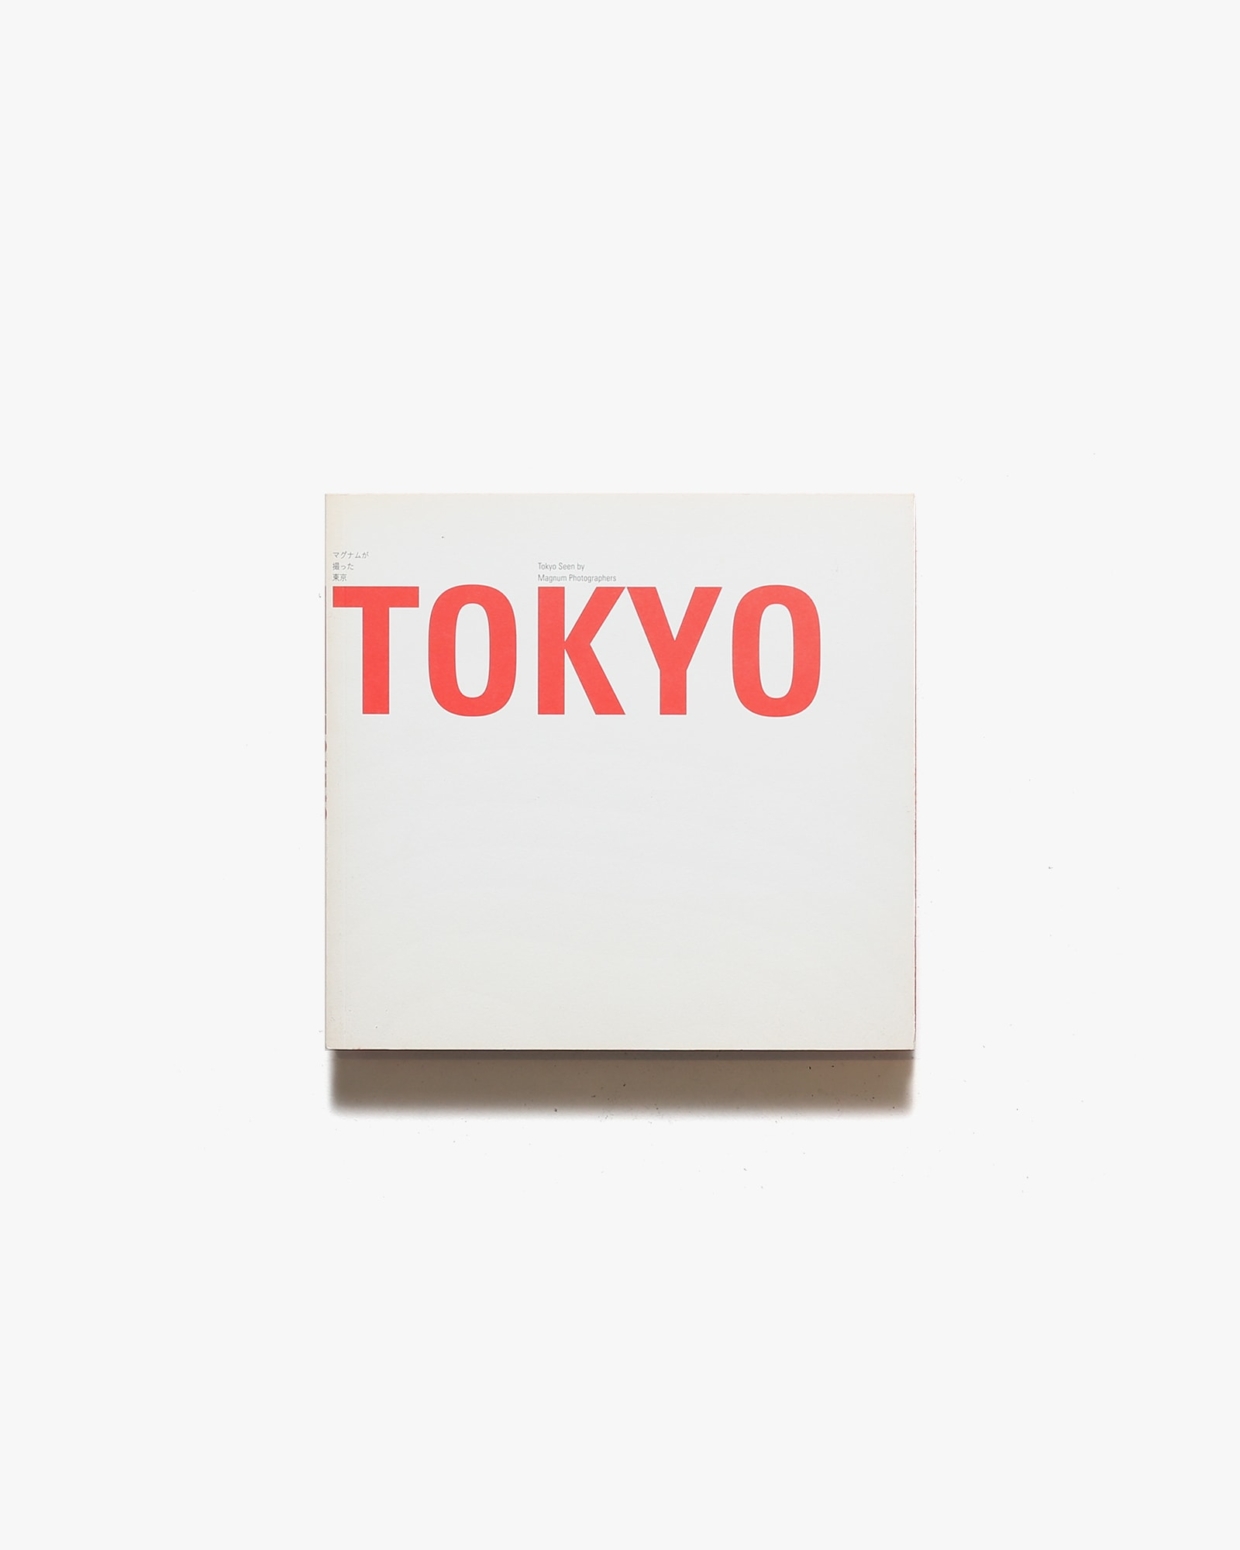 マグナムが撮った東京 マグナム・フォト創設60周年展 | 東京都写真美術館